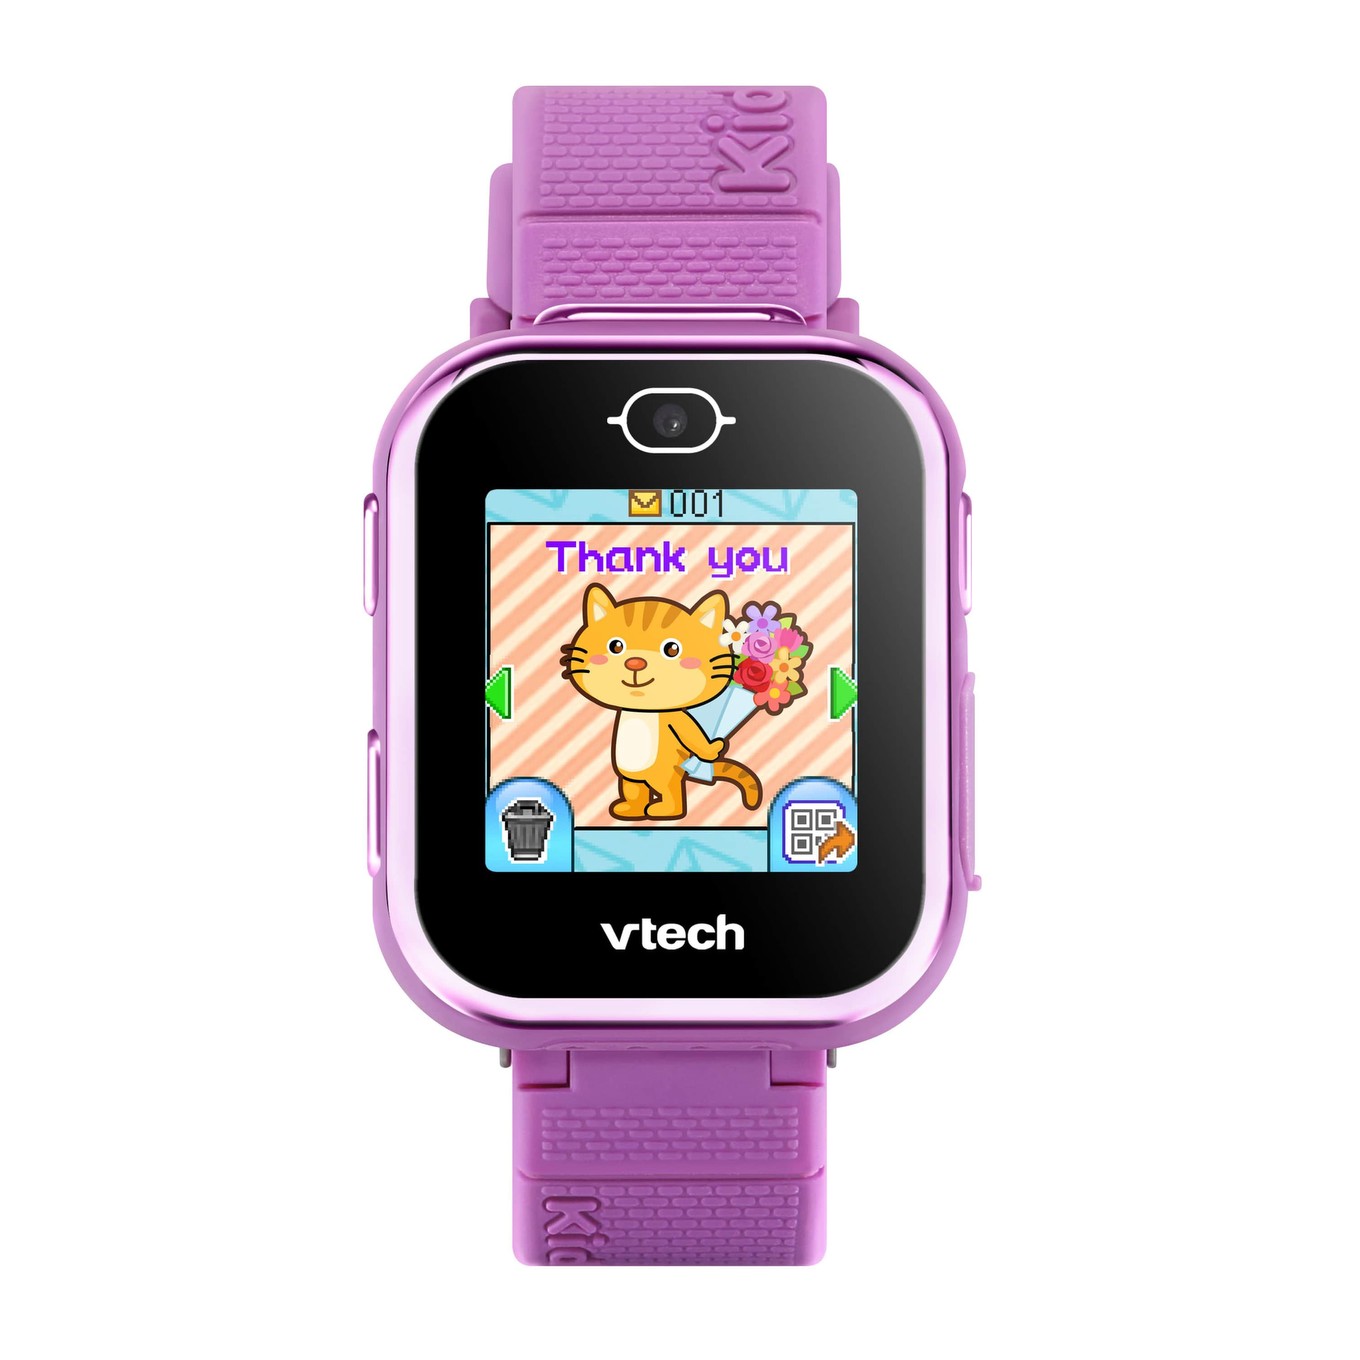 Kidizoom Smartwatch MAX - Montre tactile enfant, à partir de 5 ans